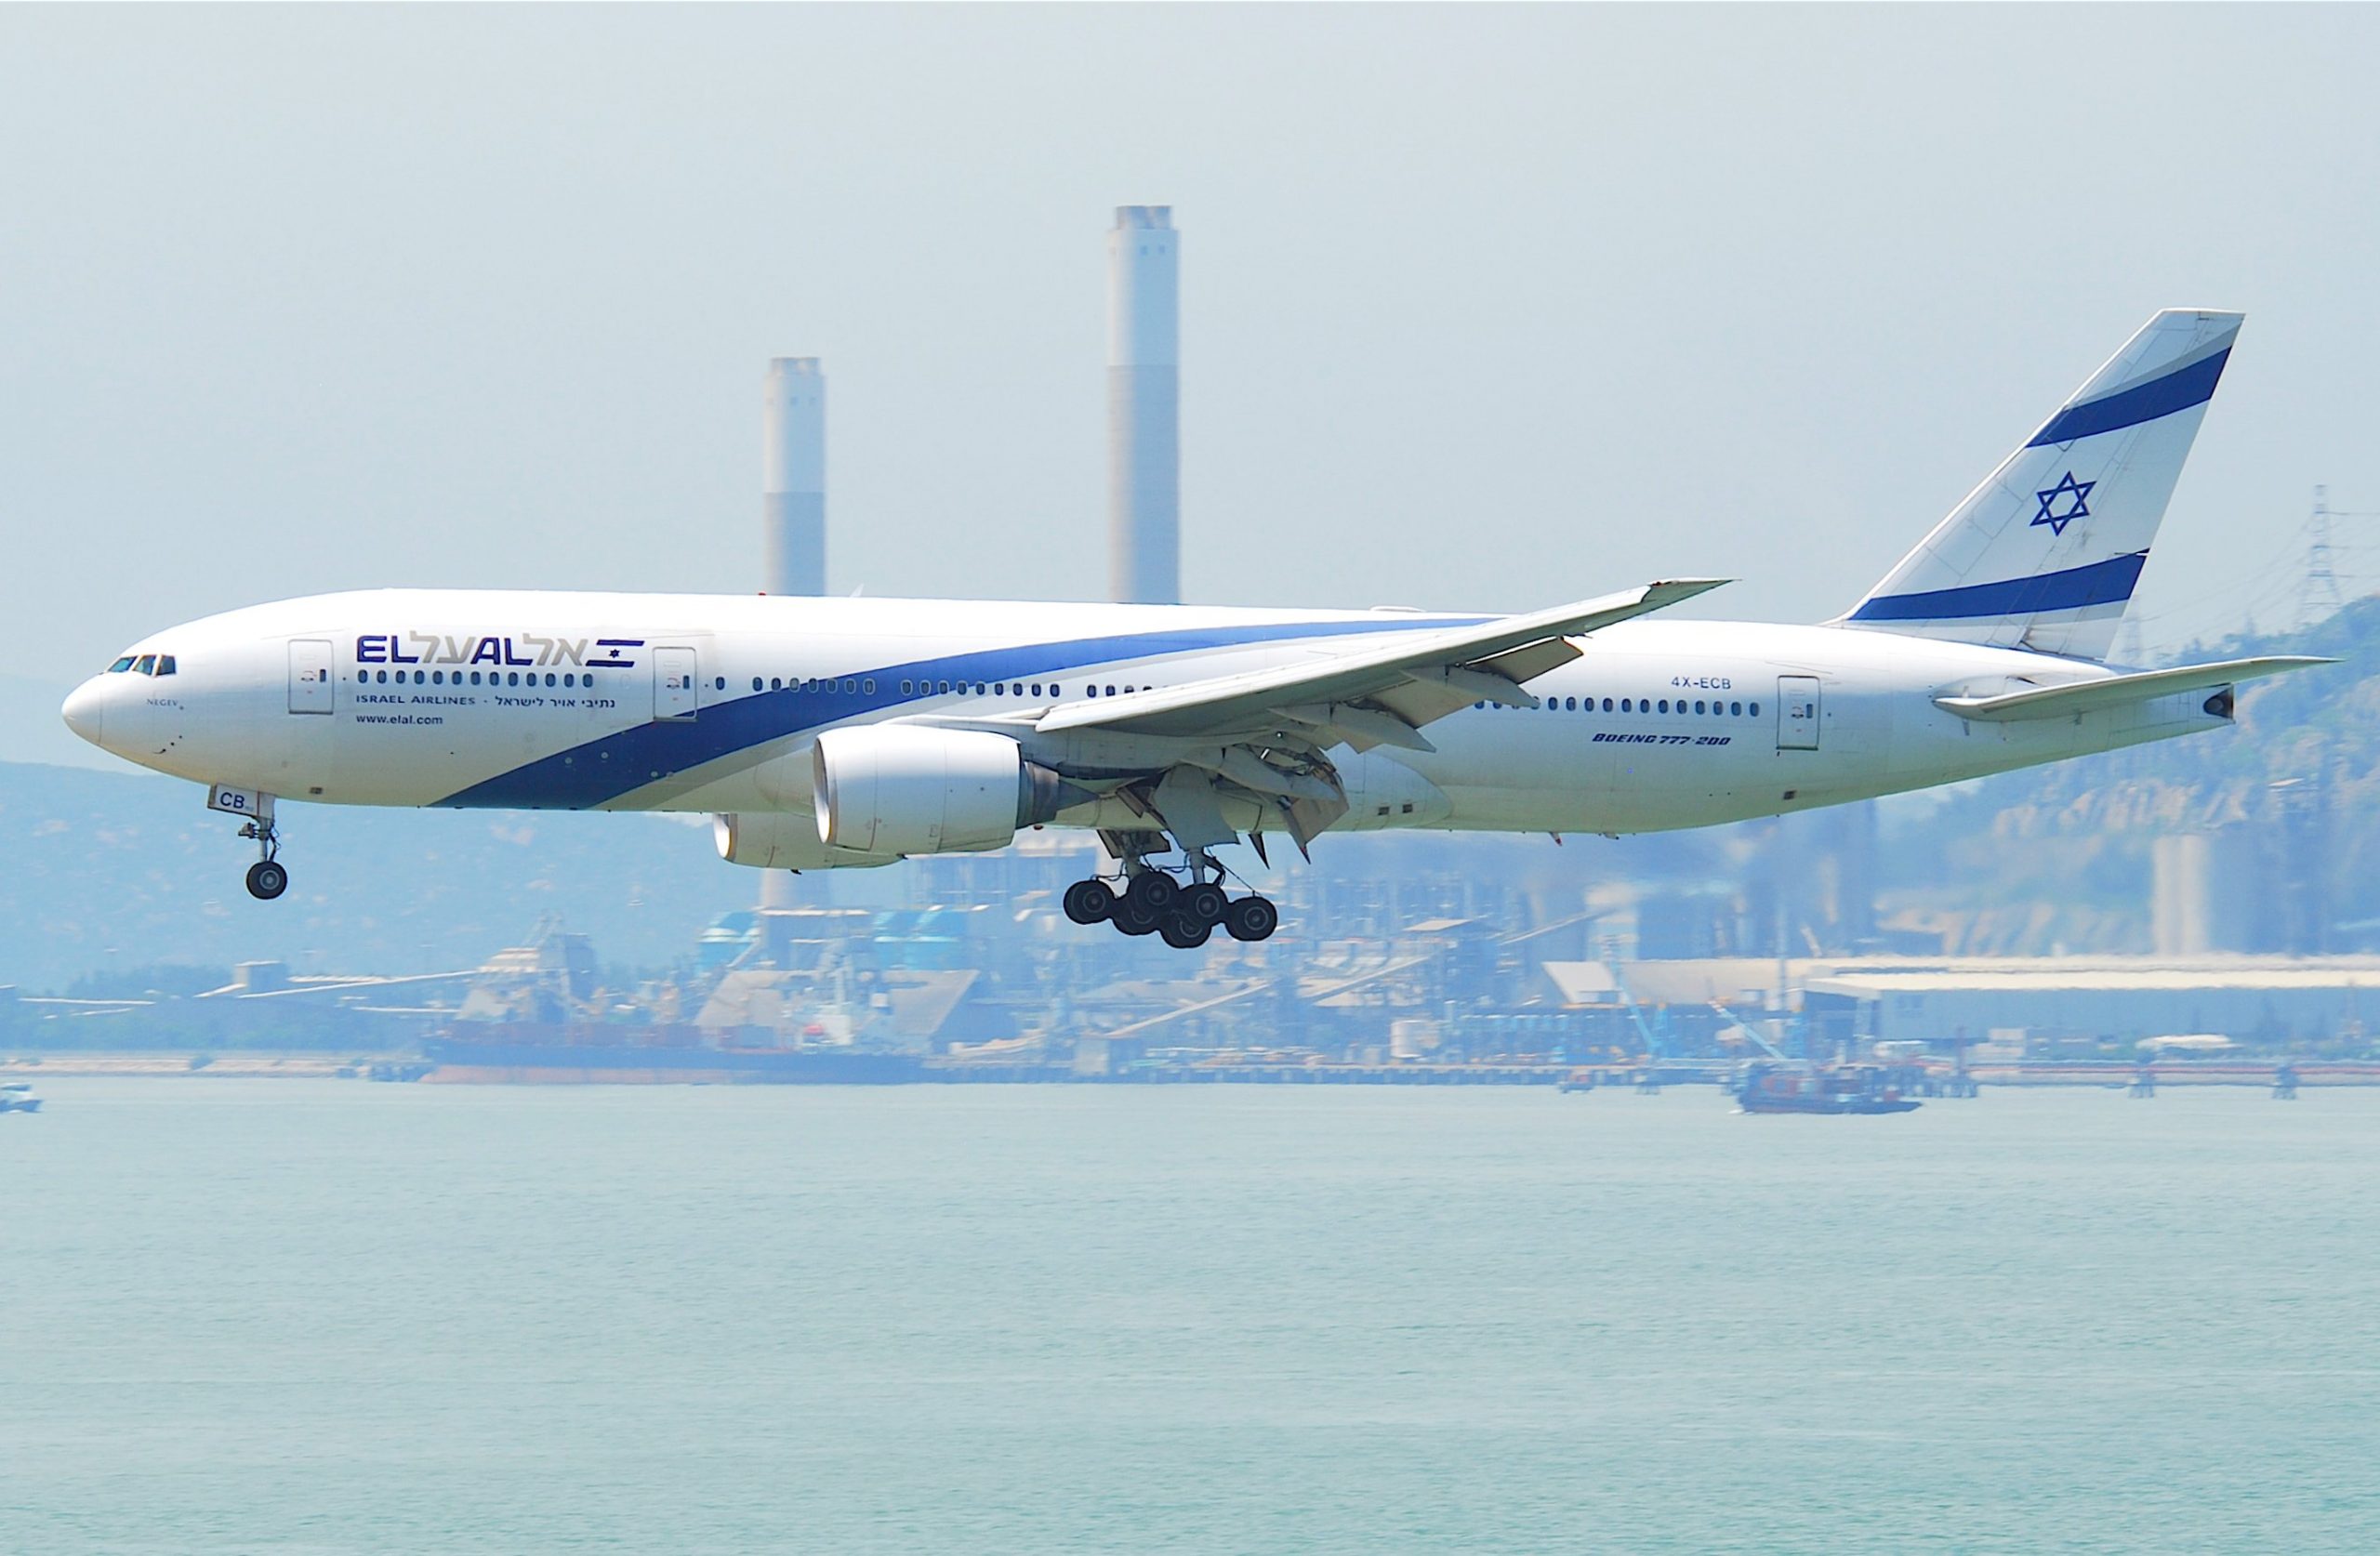 Боинг 777 200 el al. Боинг 777 в Эль Аль. El al Israel Airlines Boeing 777-200 / 200er. El al реклама. Эль аль отзывы